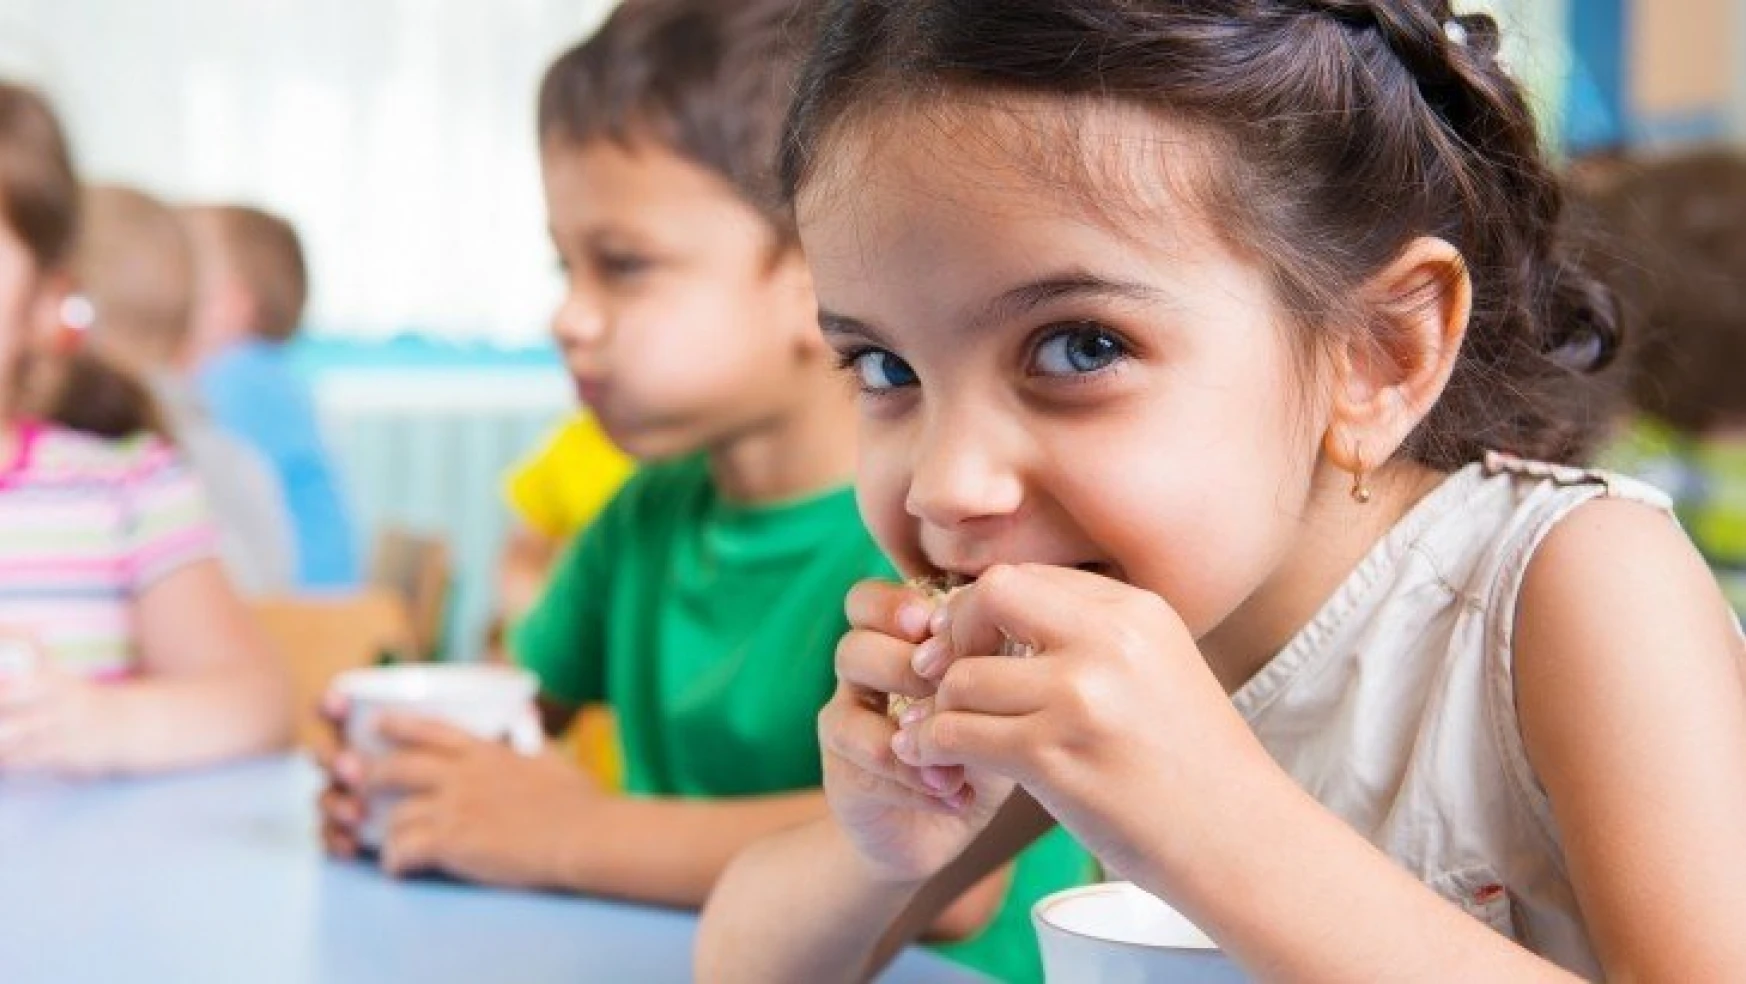 Az pişen ette böbrek yetmezliği riski çocukları daha fazla etkiliyor